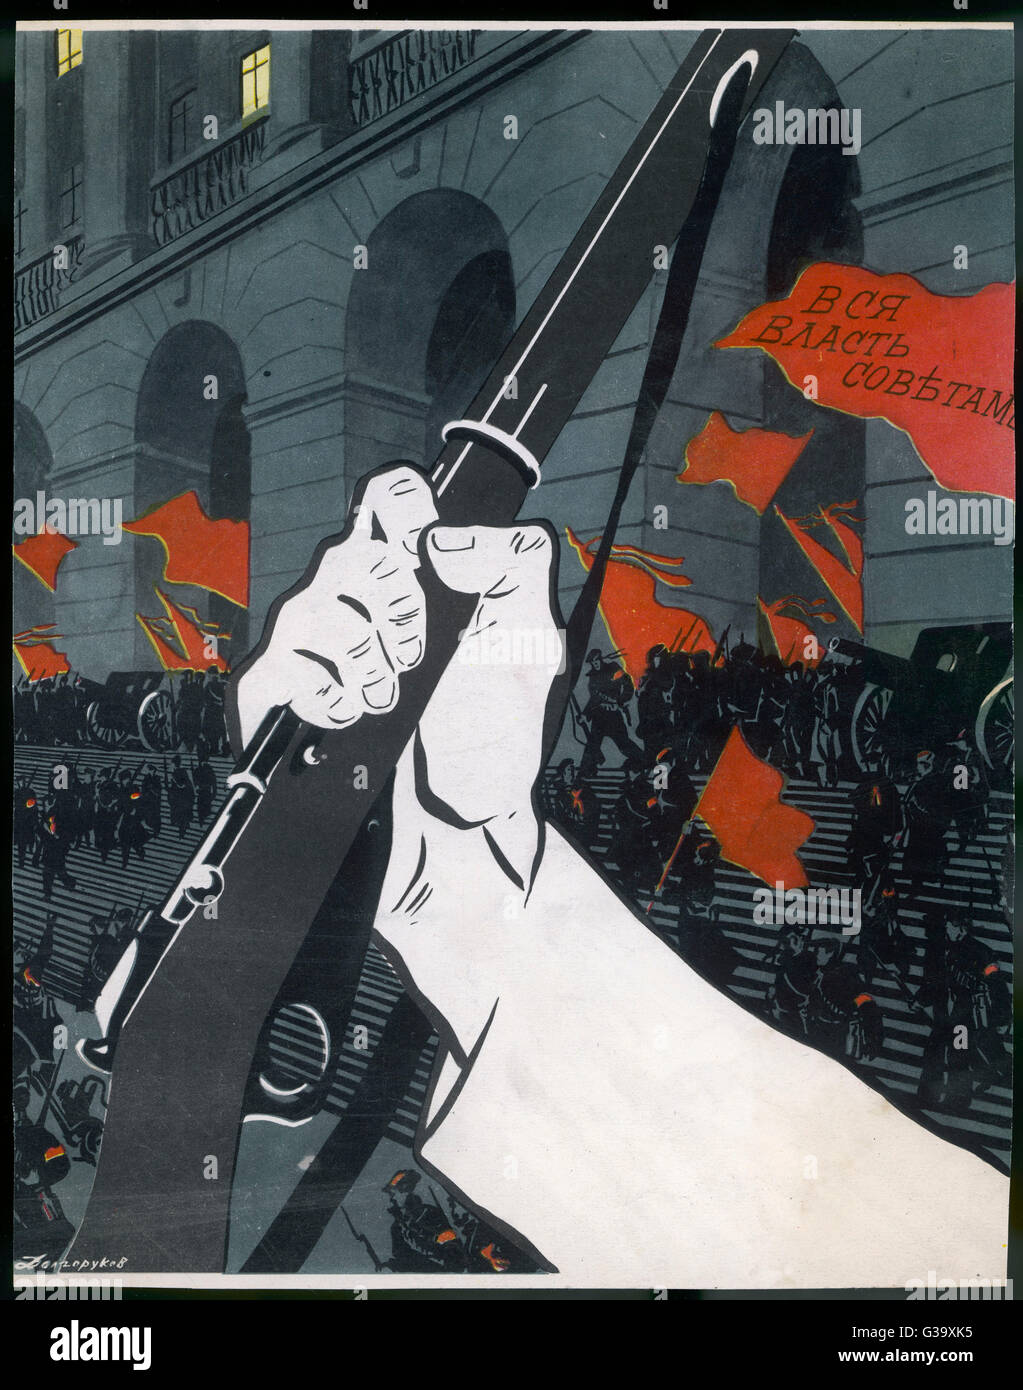 Cartel comunista - armas y banderas rojas - Revolución Rusa Foto de stock